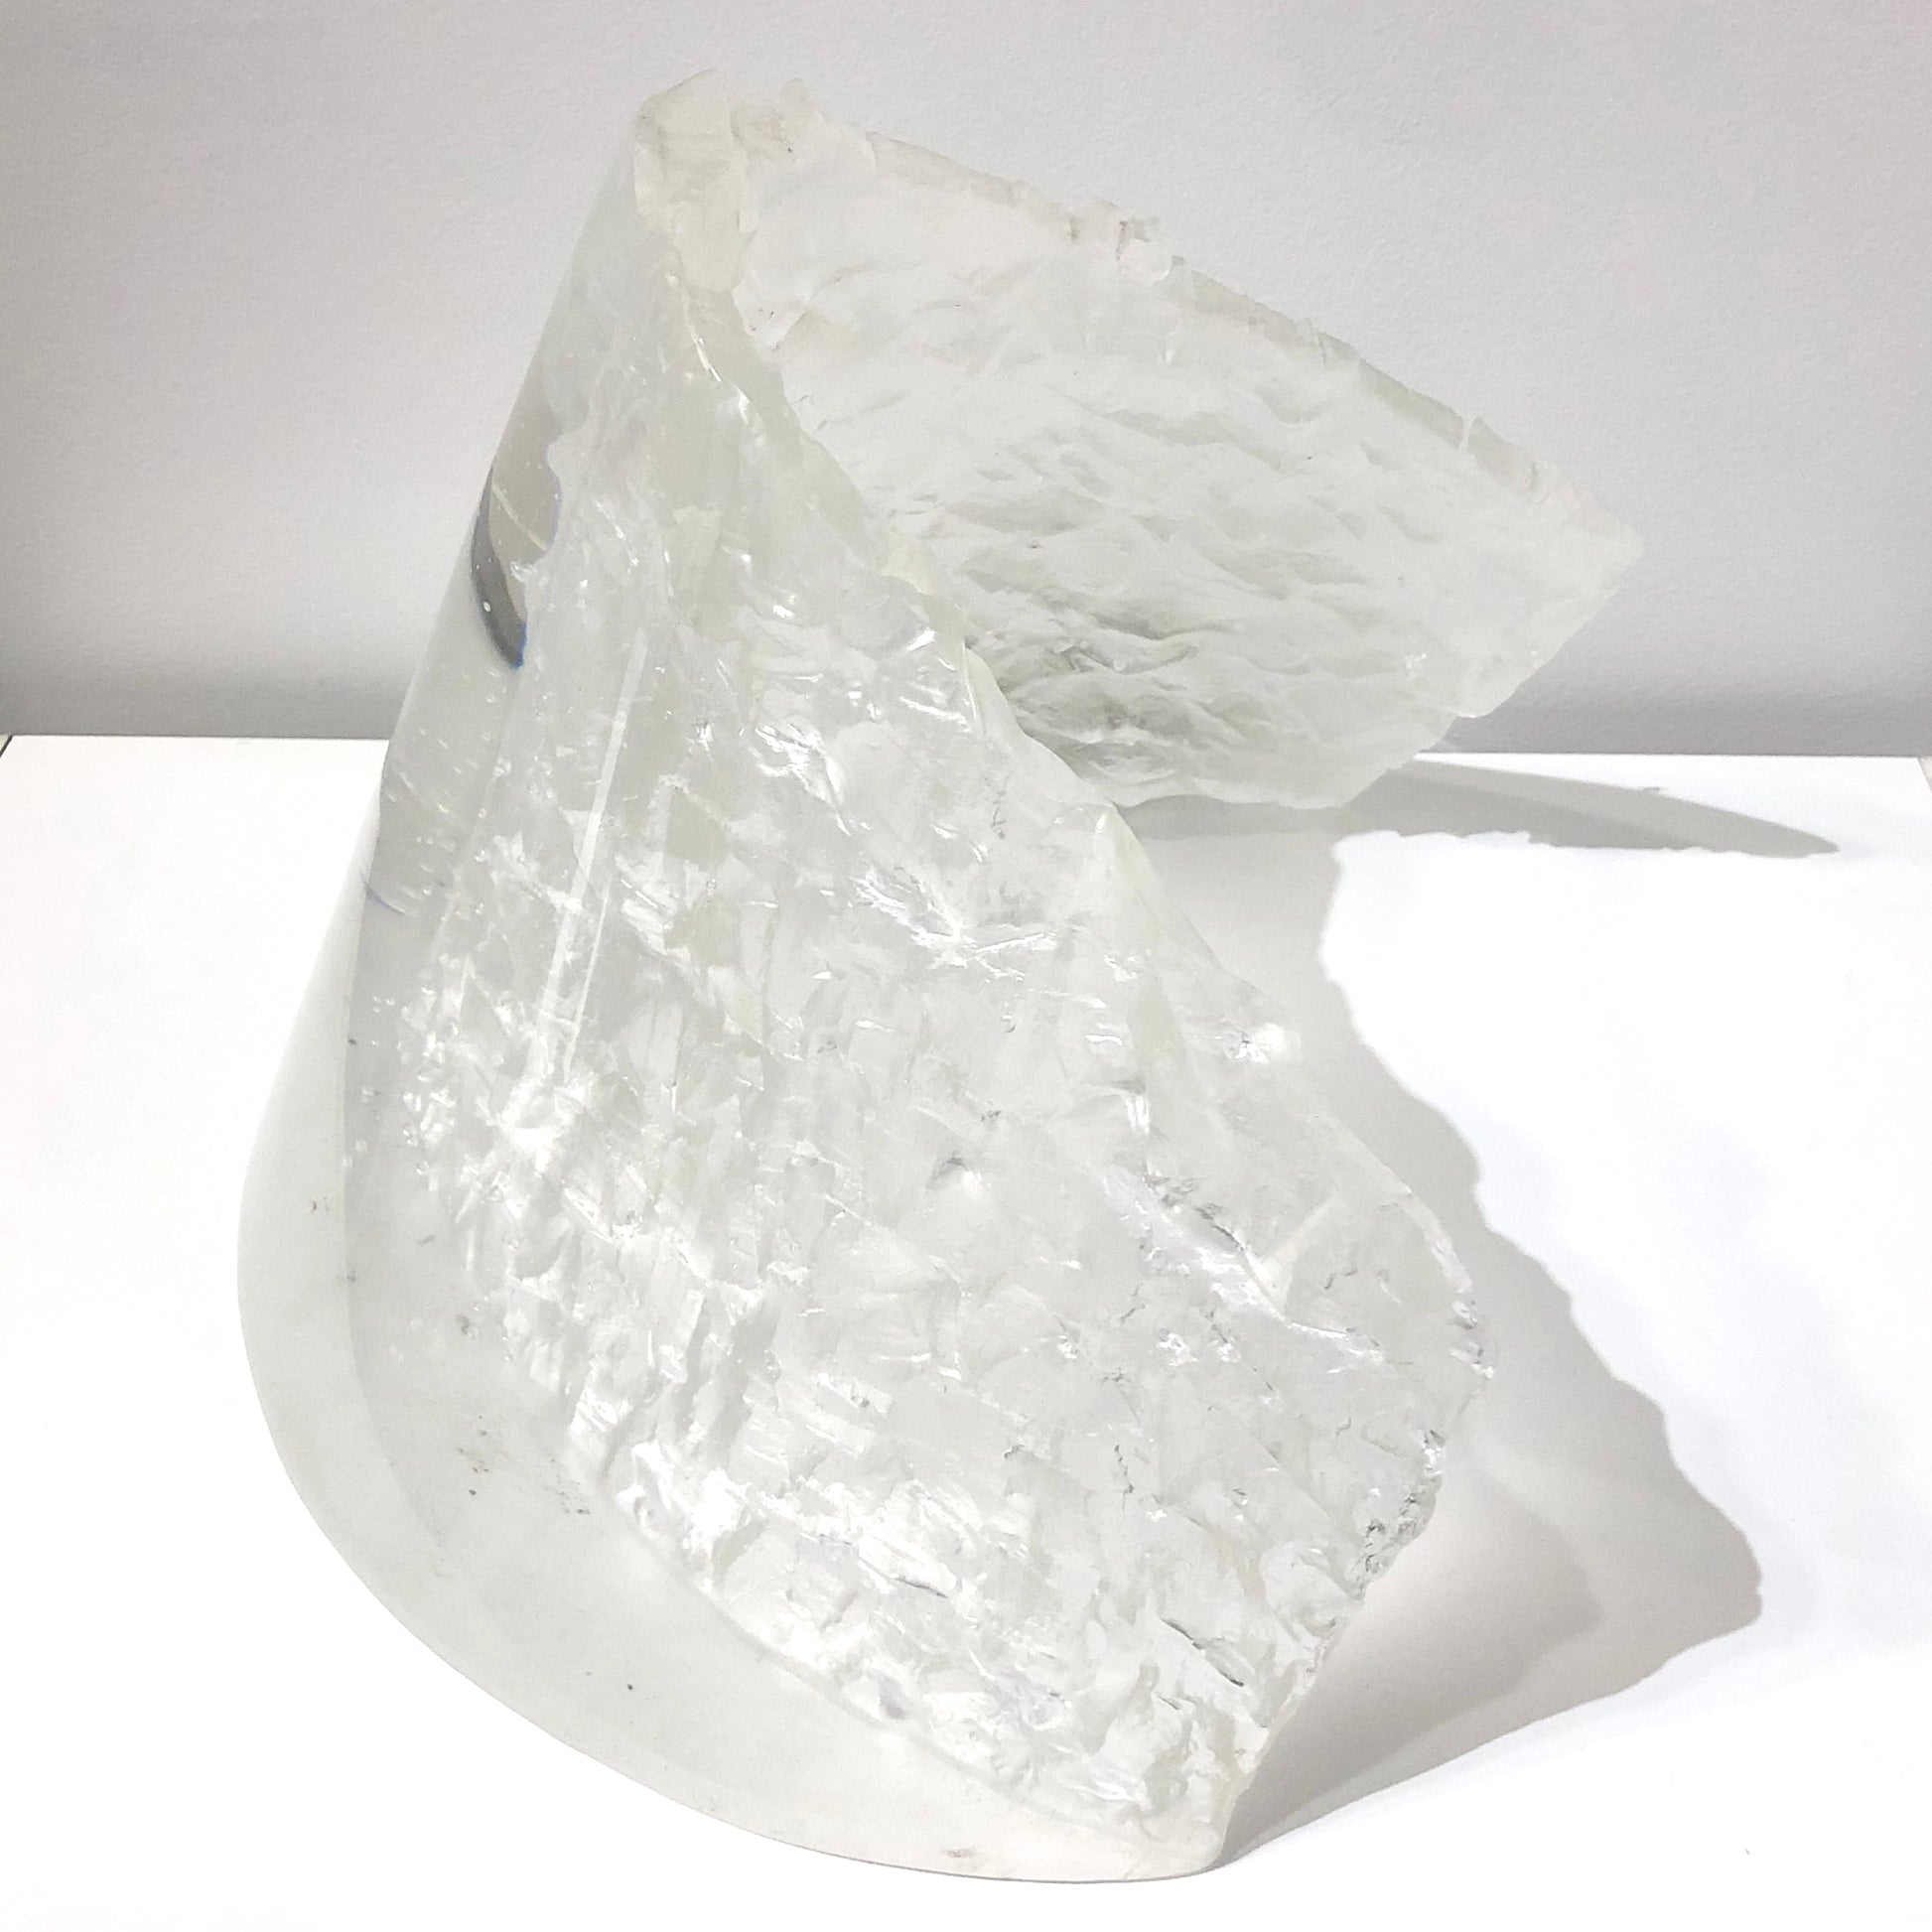 Clear glass sculpture by NZ artist David Murray